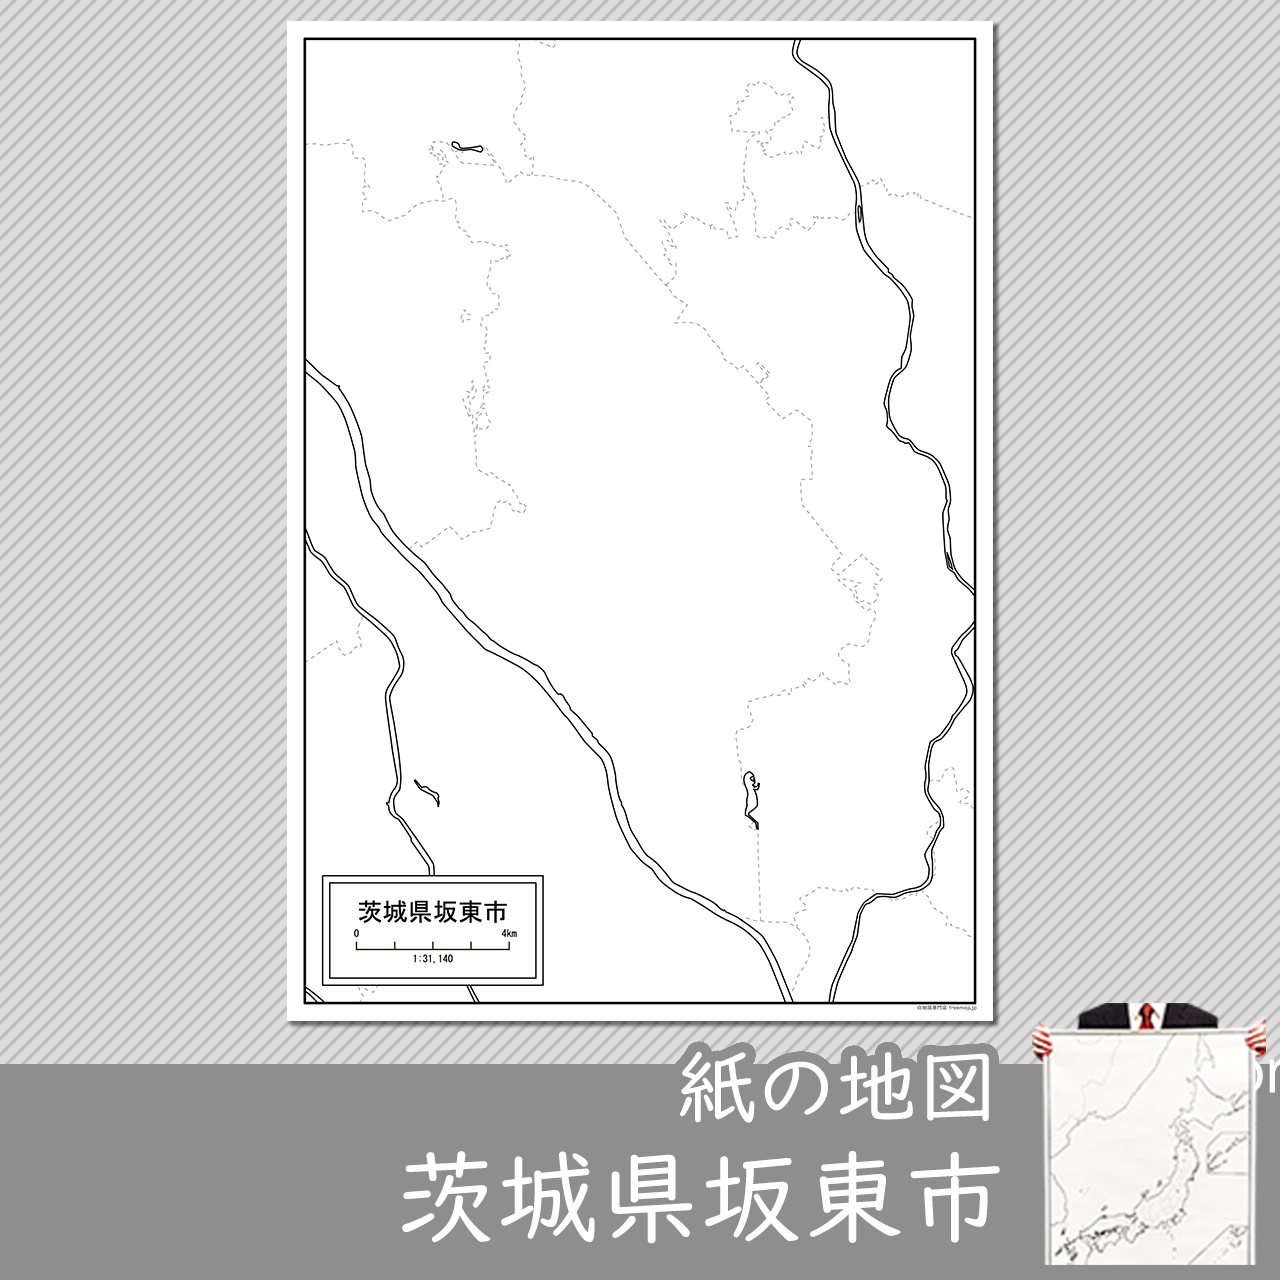 坂東市の紙の白地図のサムネイル